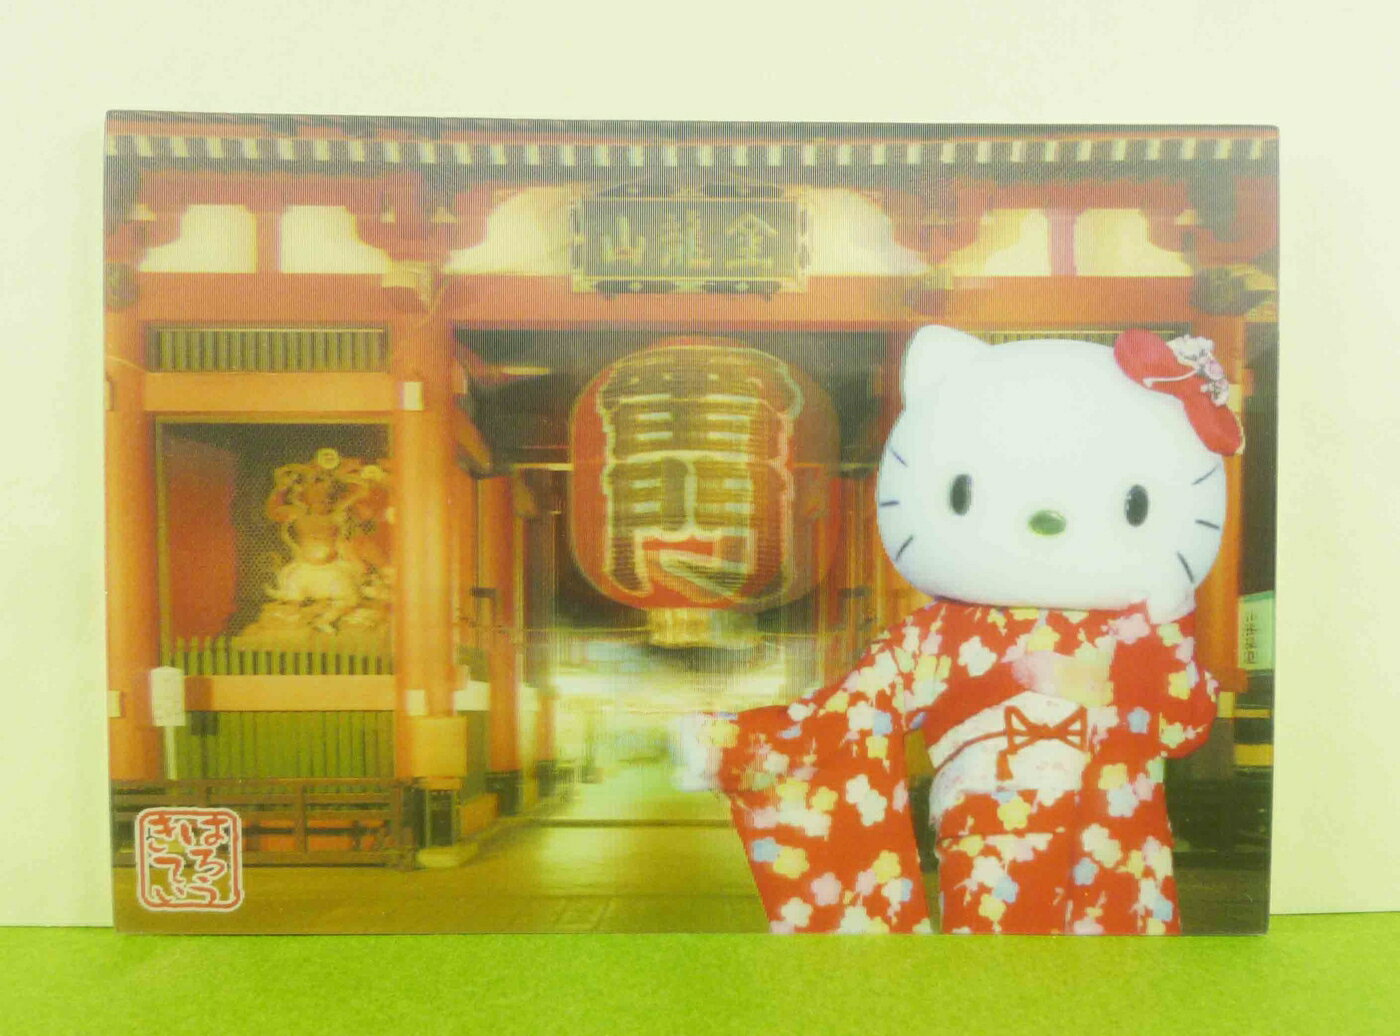 【震撼精品百貨】Hello Kitty 凱蒂貓 明信片-雷門 震撼日式精品百貨